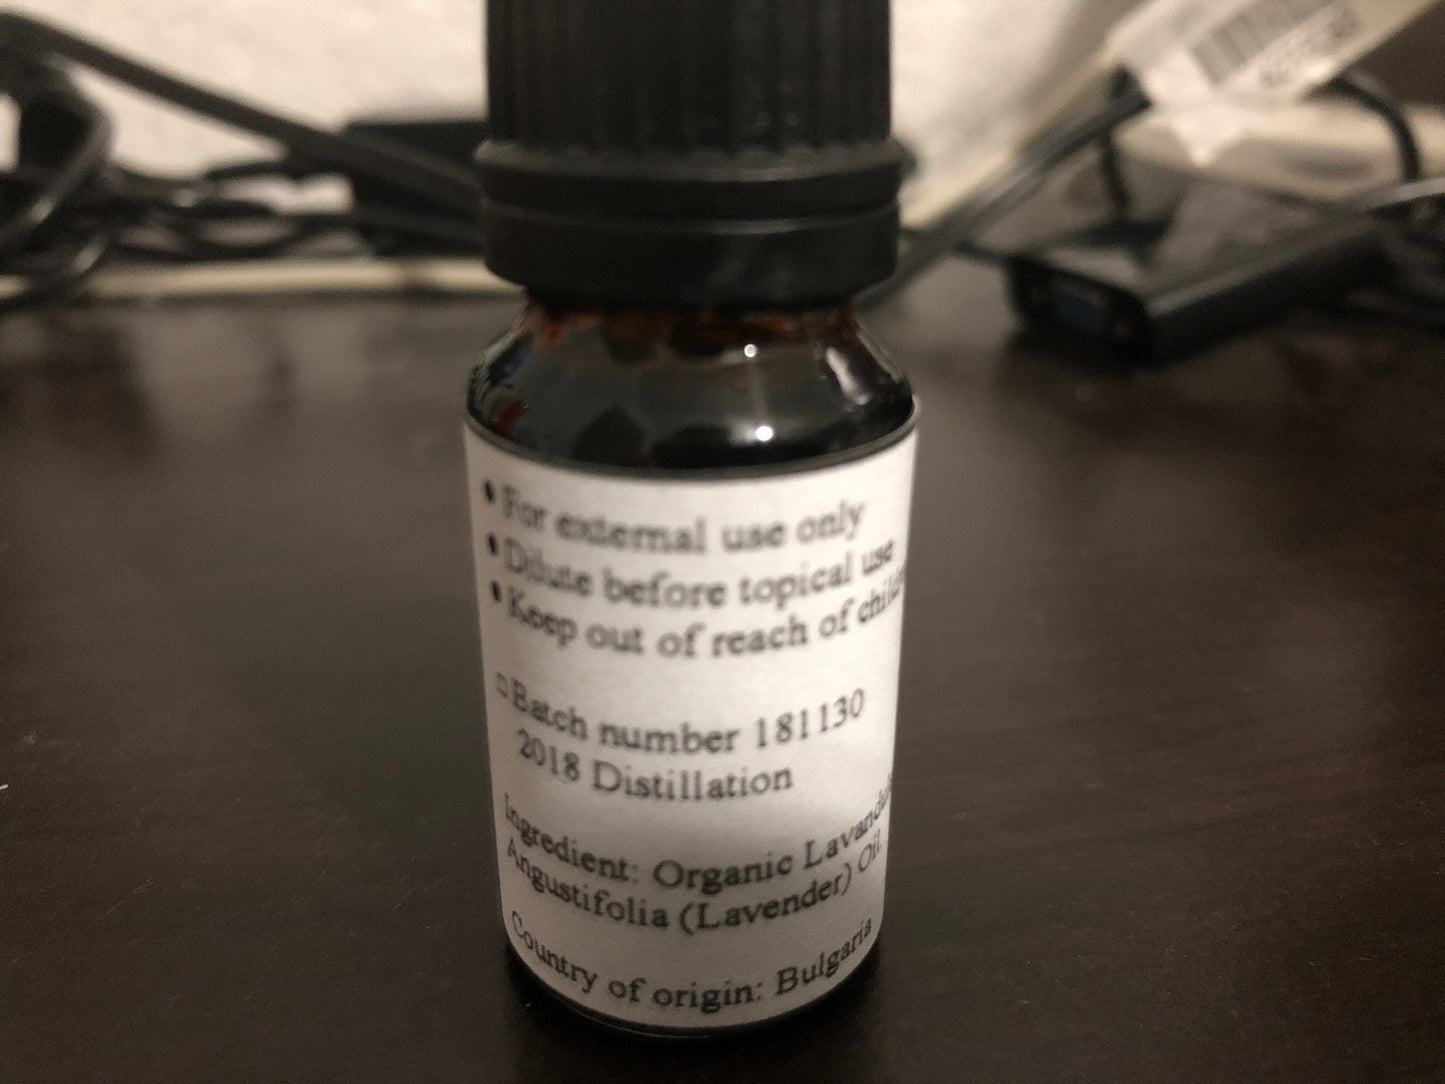 Organic Lavender Essential Oil - Deli Aroma 